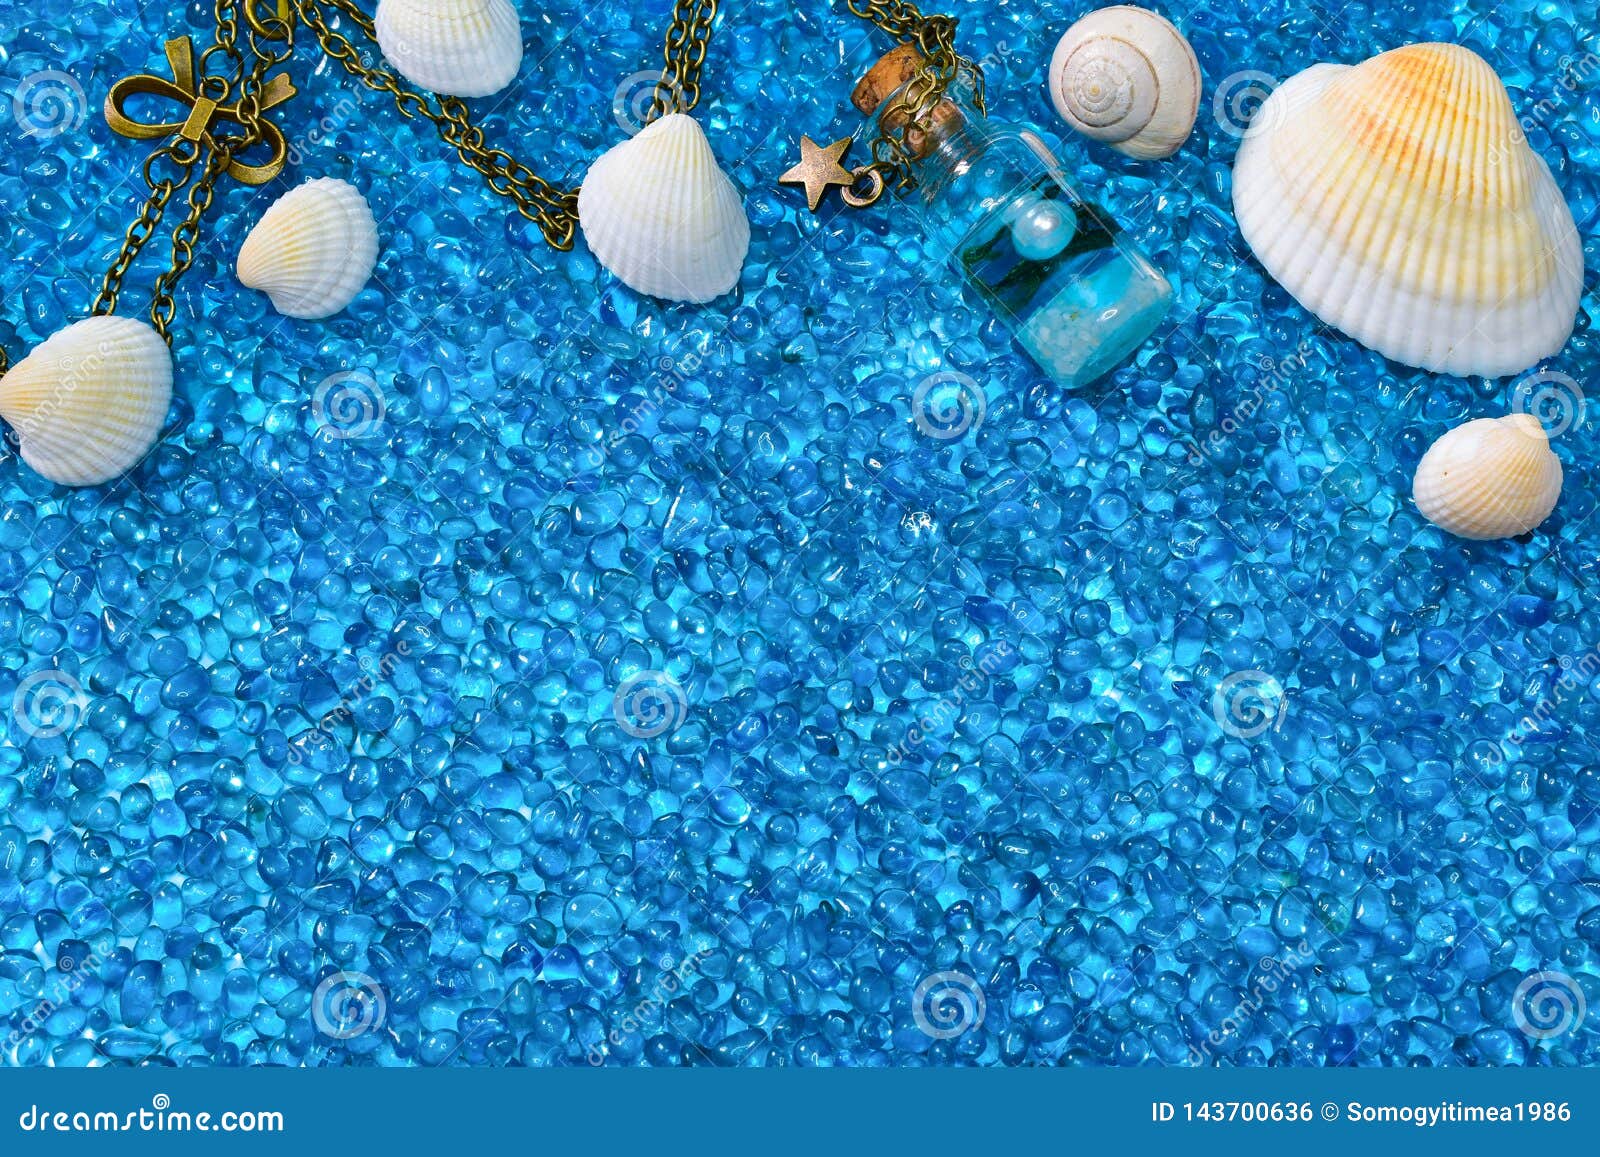 Sea Shells, Snail, Glass Bottle (Vỏ sò, ốc, chai thủy tinh): Tuổi thơ của mỗi người đều có những ký ức về những vật dụng được tìm thấy trên bãi biển. Hình ảnh về Vỏ sò, ốc, chai thủy tinh sẽ khiến bạn trở về thời thơ ấu và cảm nhận được sự đầy màu sắc và trong lành của thiên nhiên xung quanh bạn.